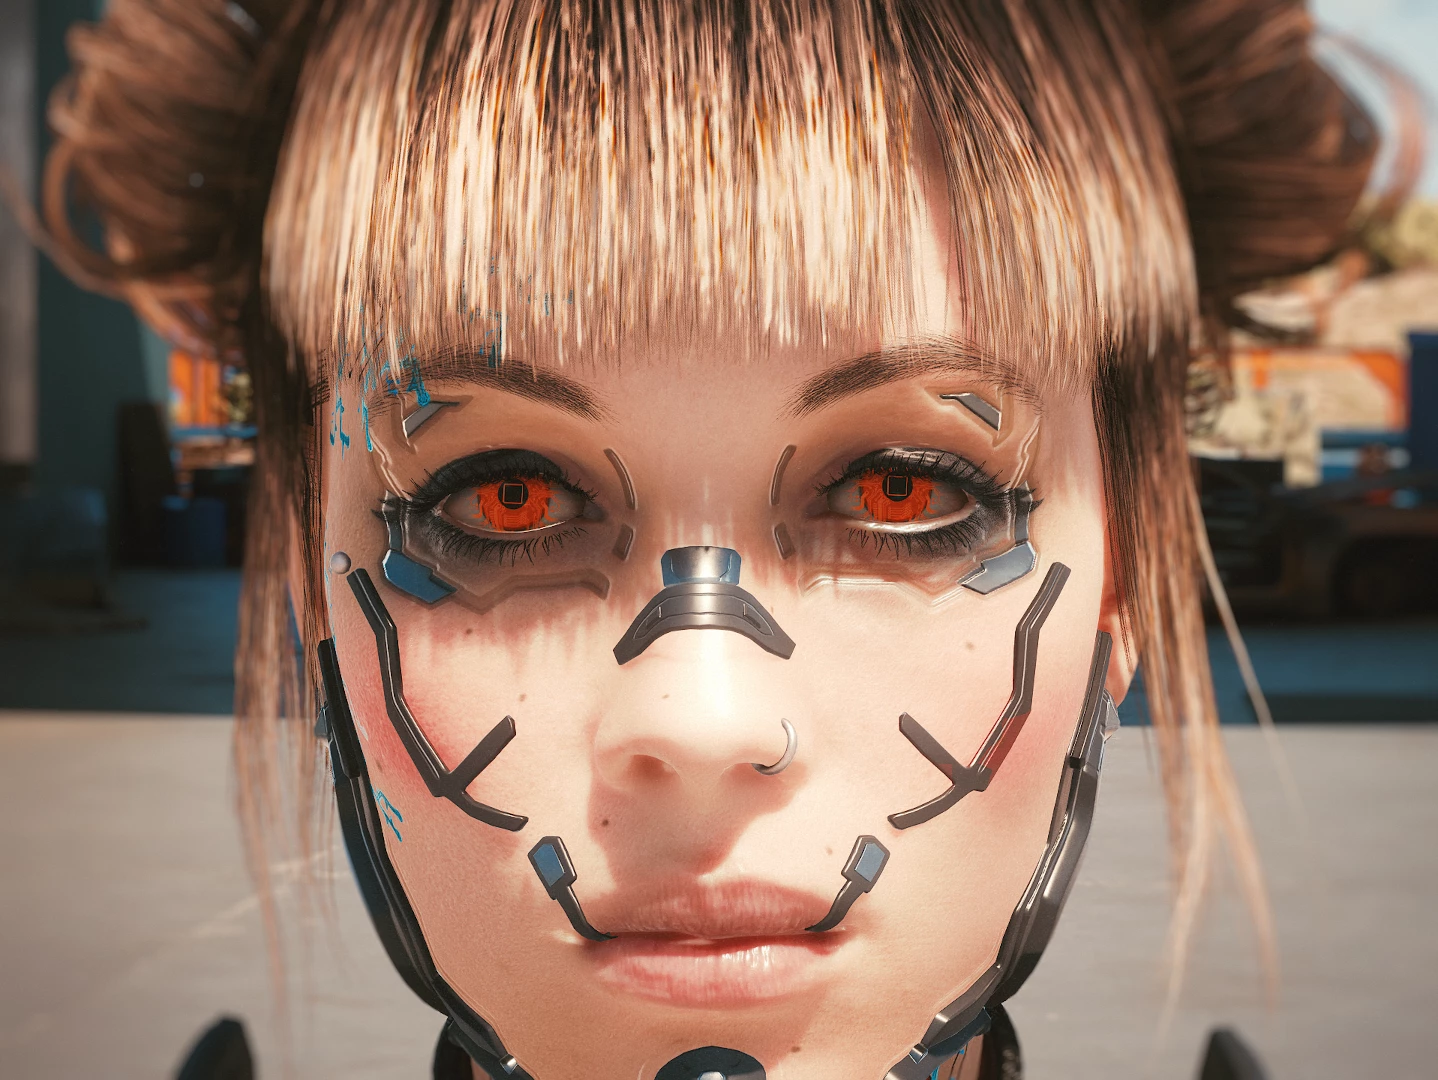 cyborg eyes